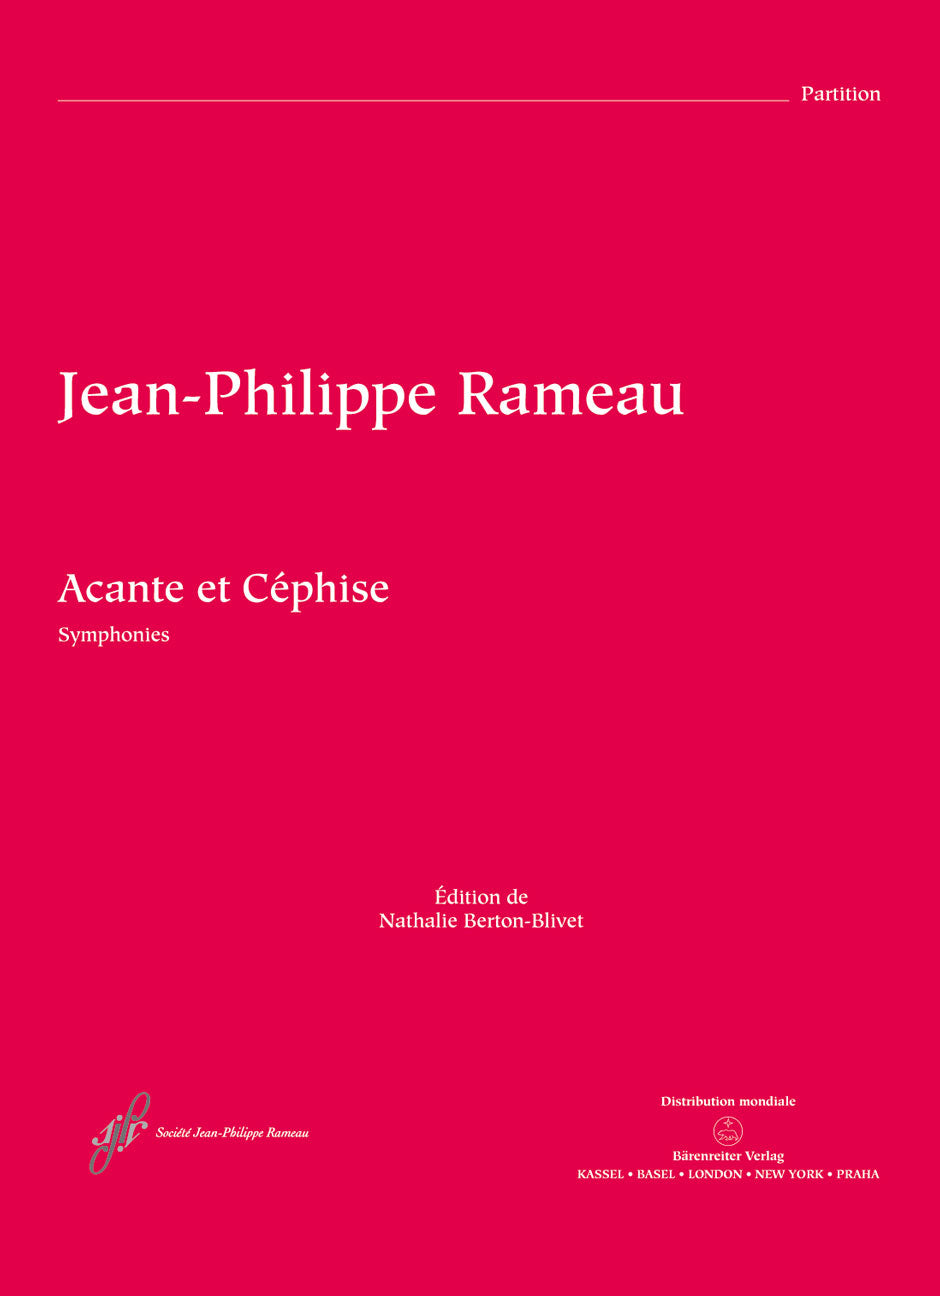 Rameau: Symphonies from Acante et Céphise ou La sympathie, RCT 21